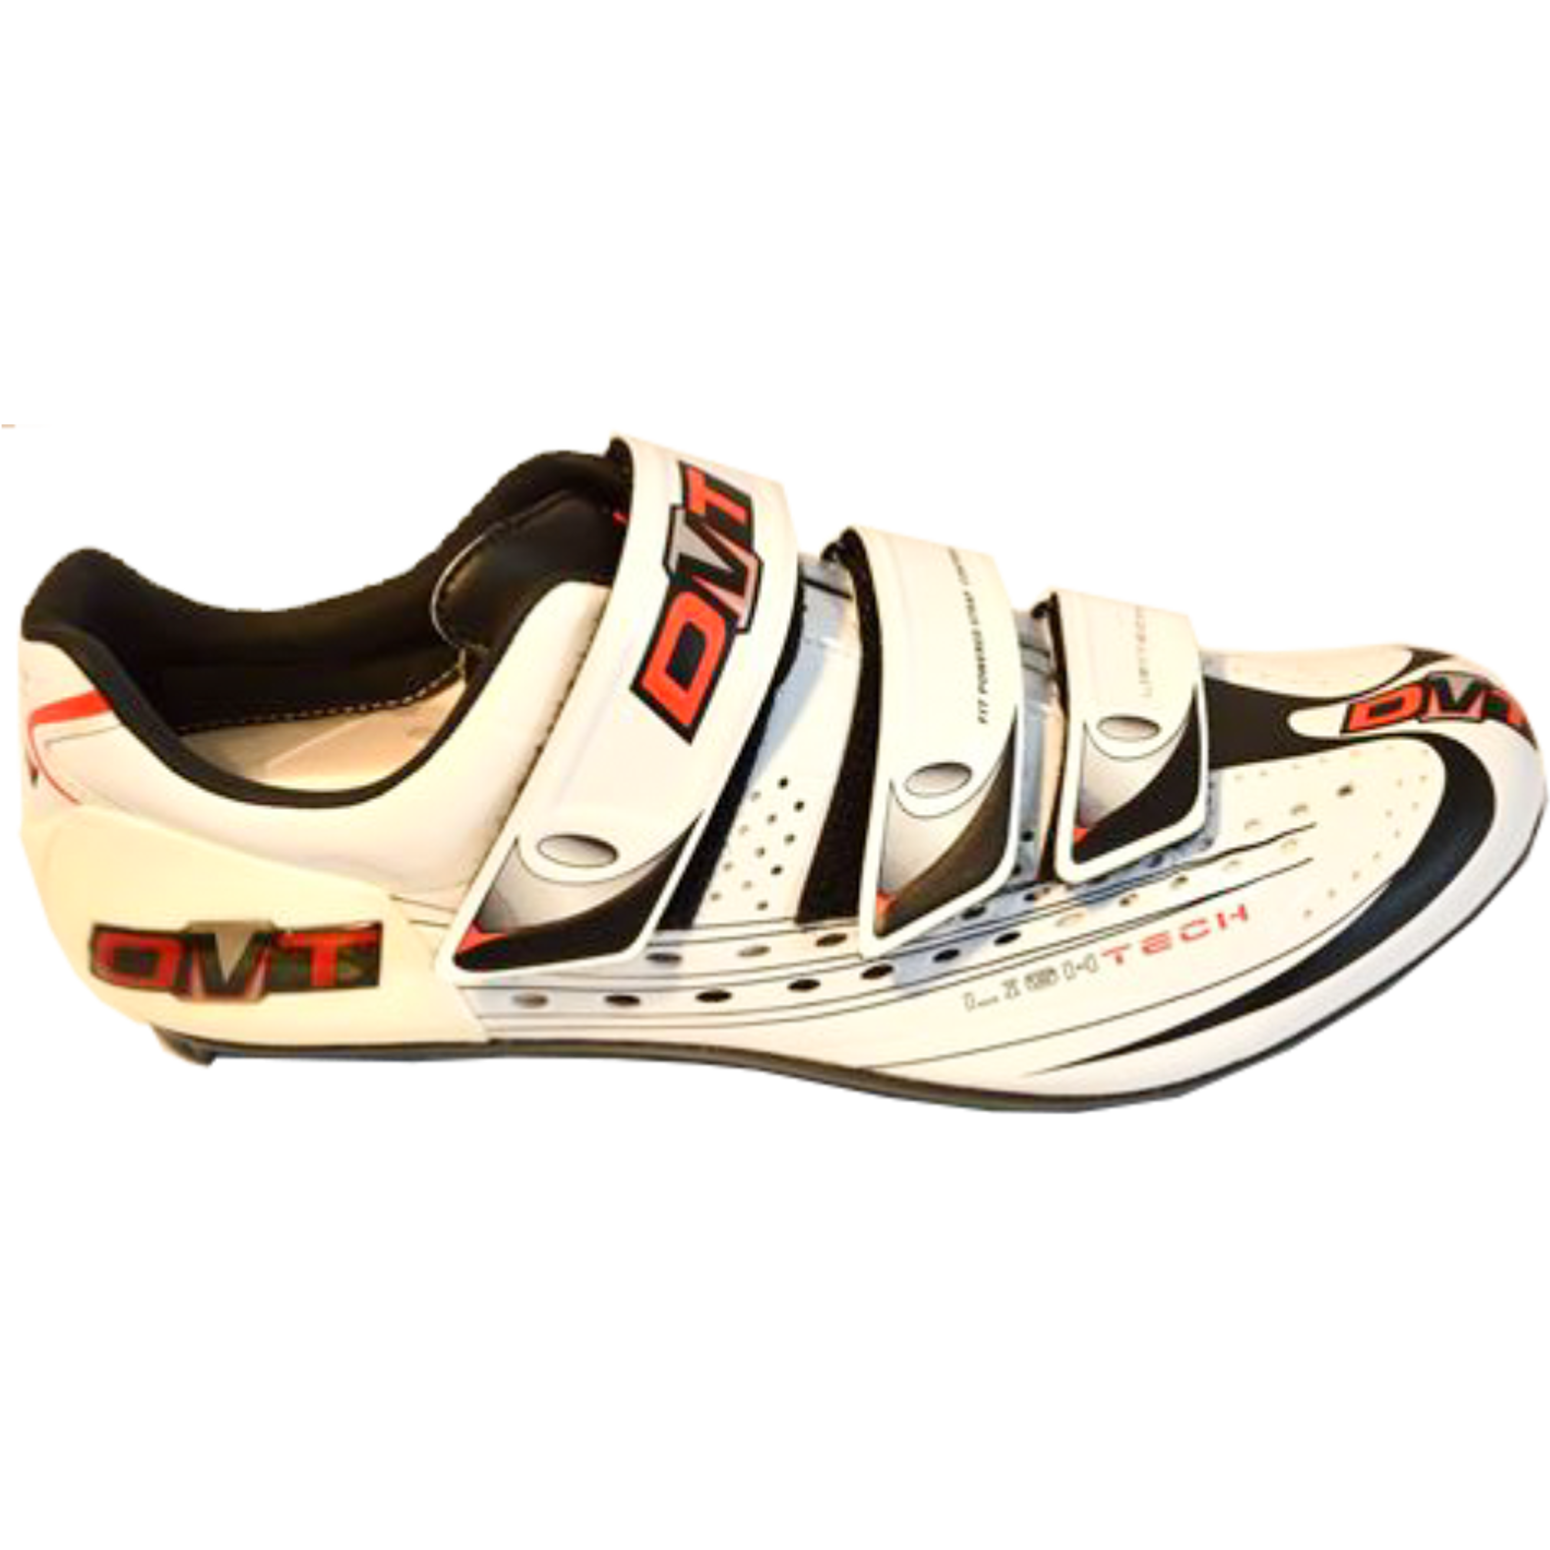 Imagem de Sapato KYOMA branco/vermelho - sola carbono